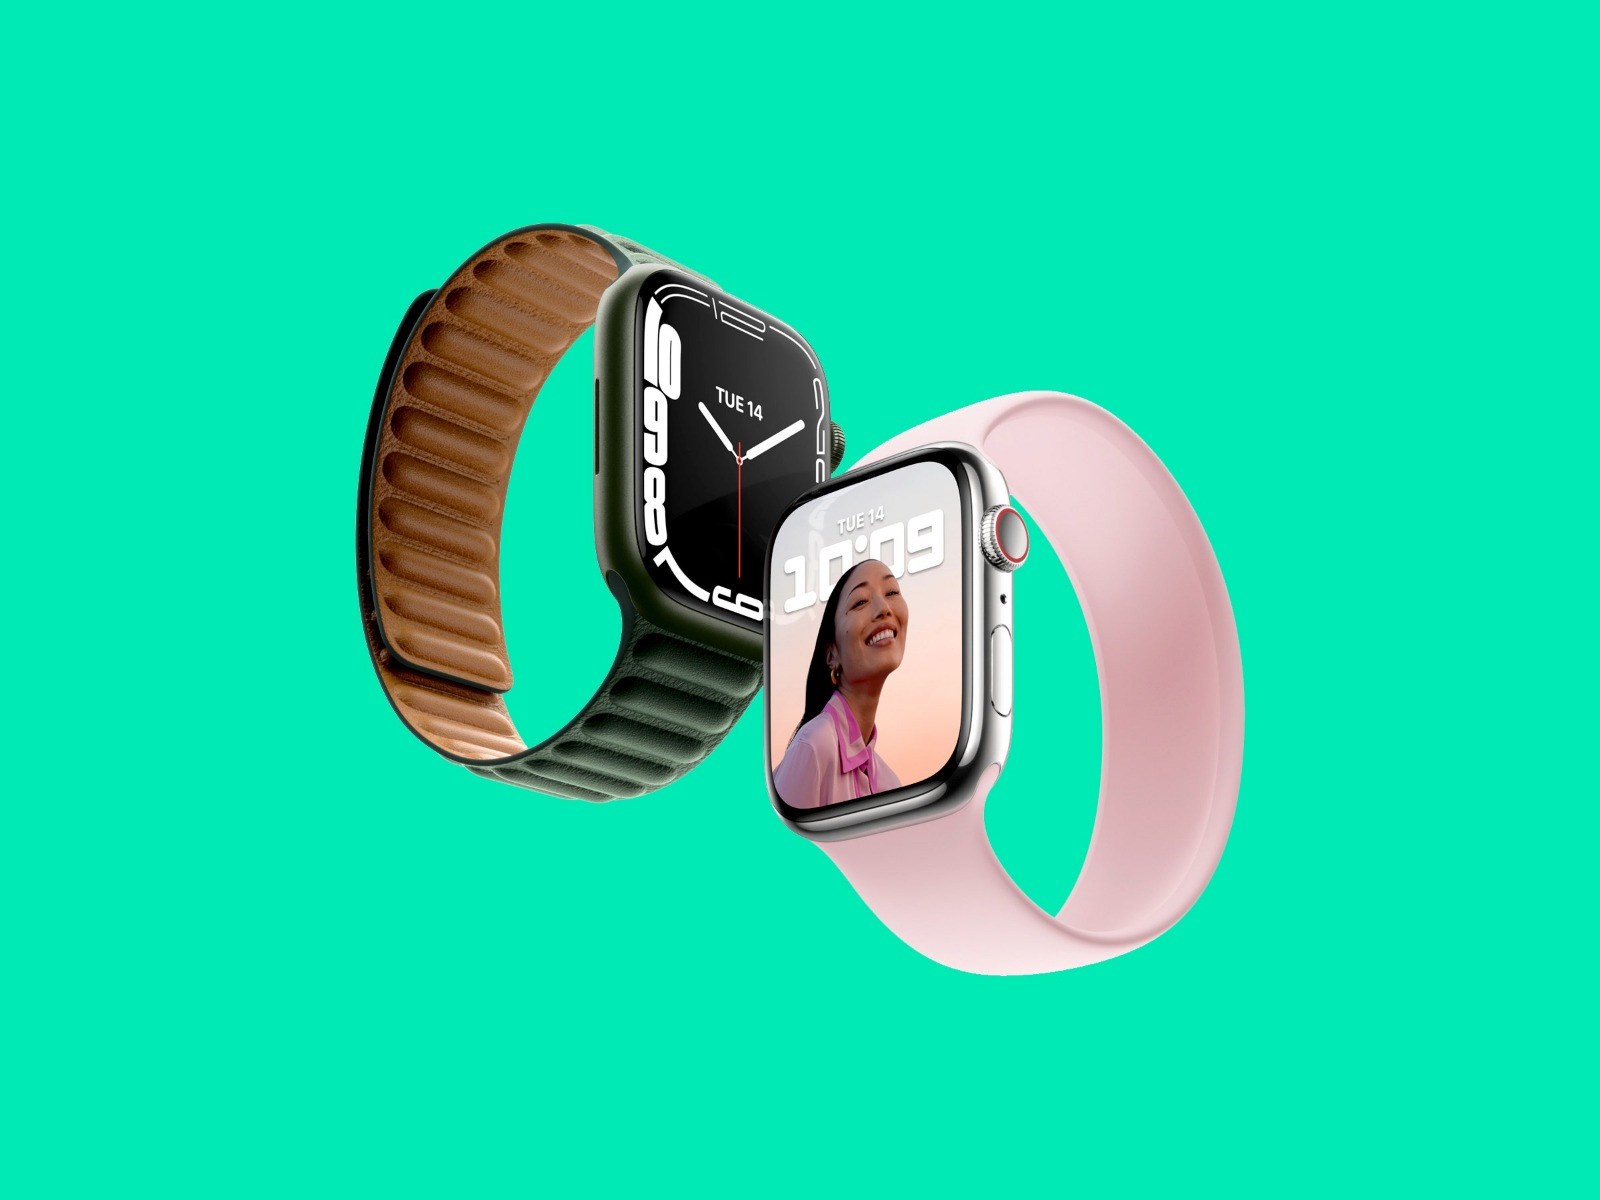 Apple Watch yeni algoritmasıyla kalp sorunlarını teşhis edebilir